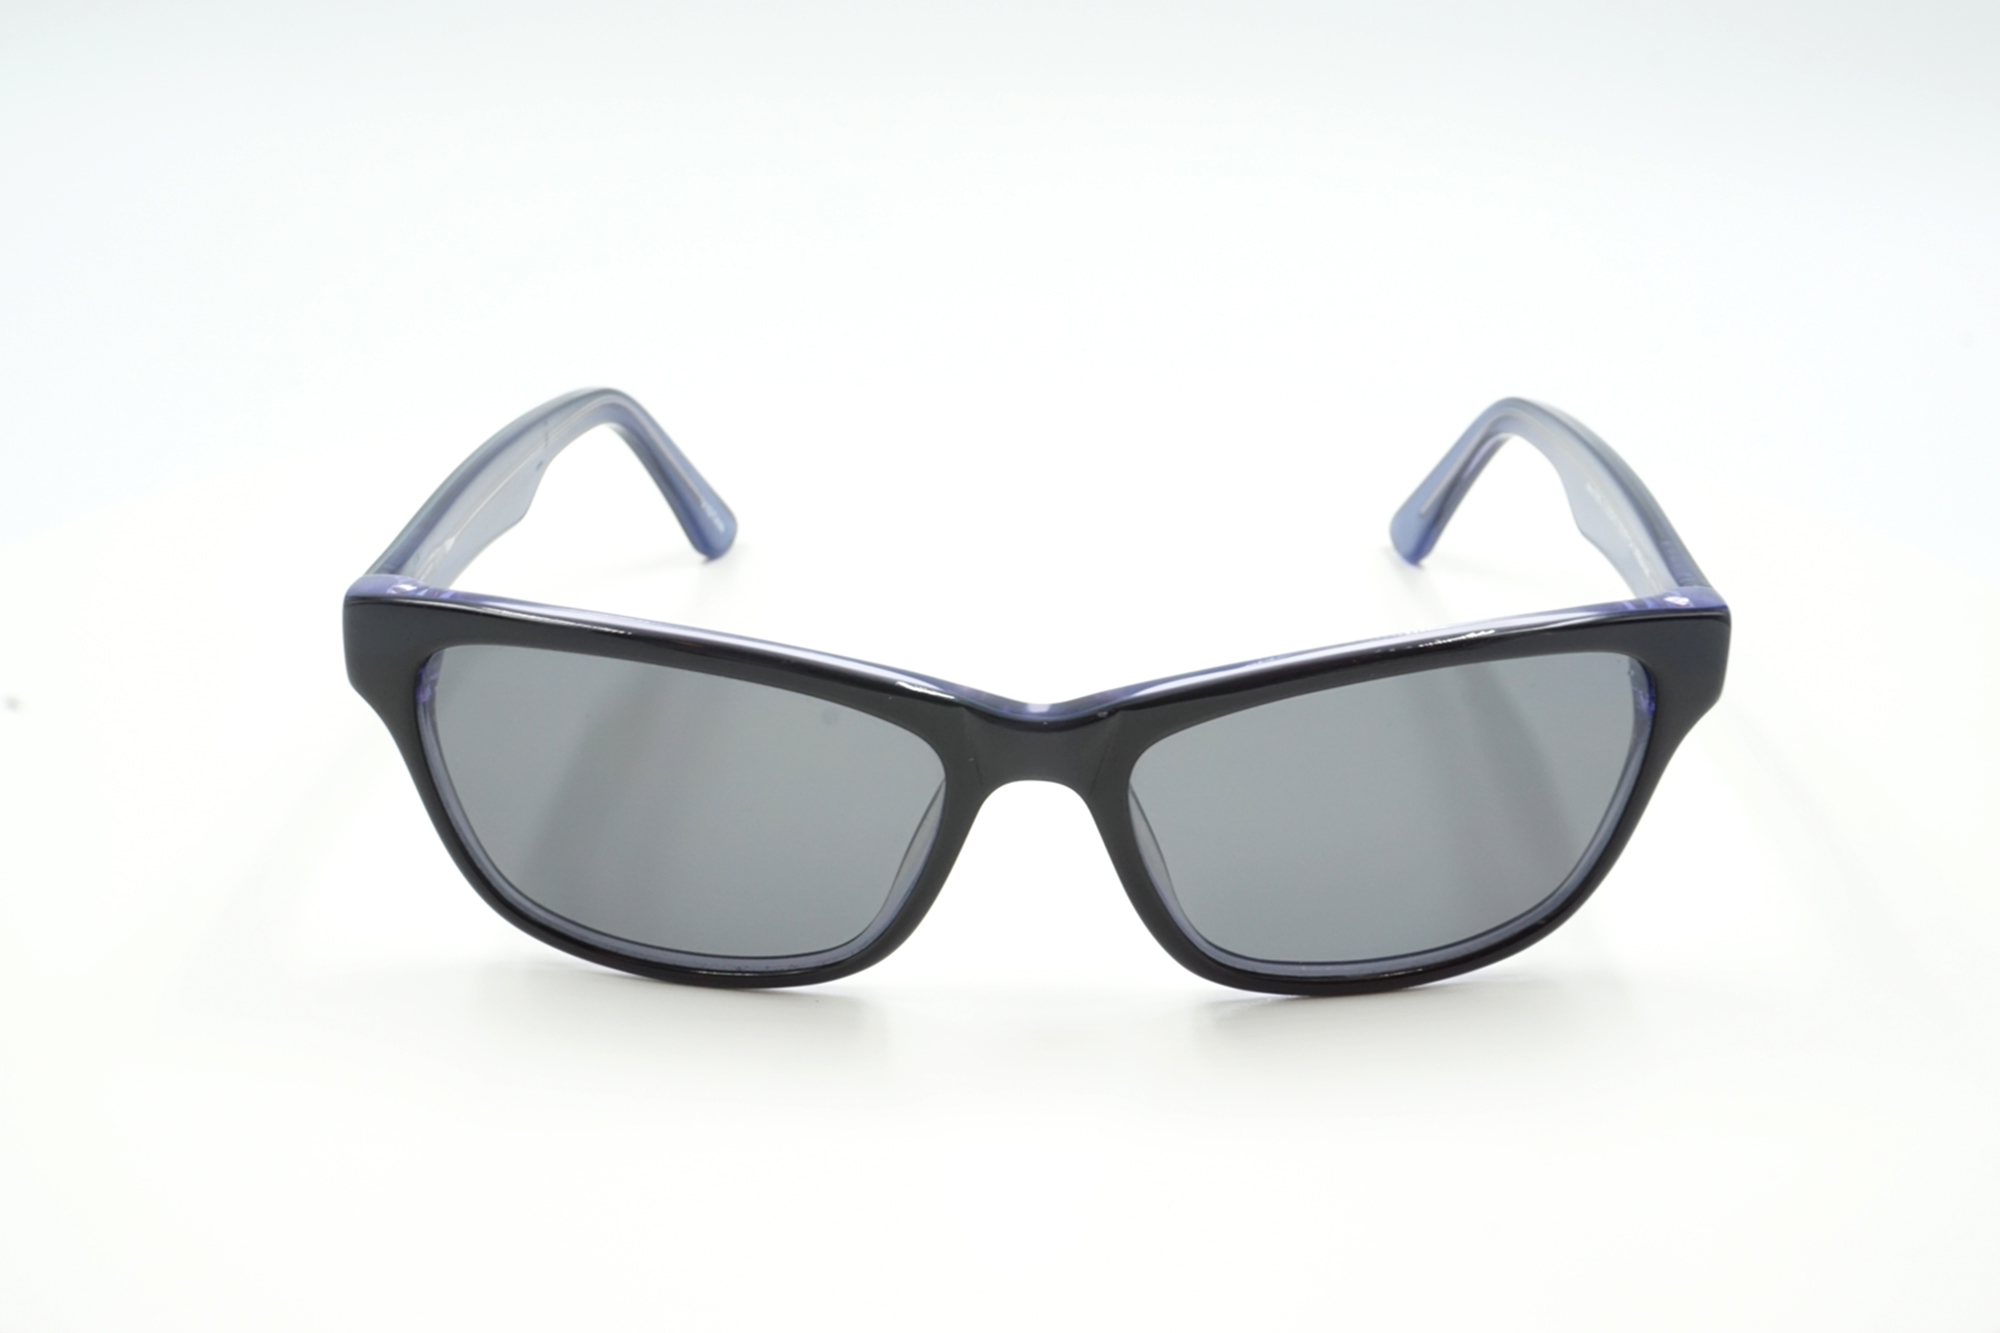 Sonnenbrille Minnie mit optischen Sonnengläsern